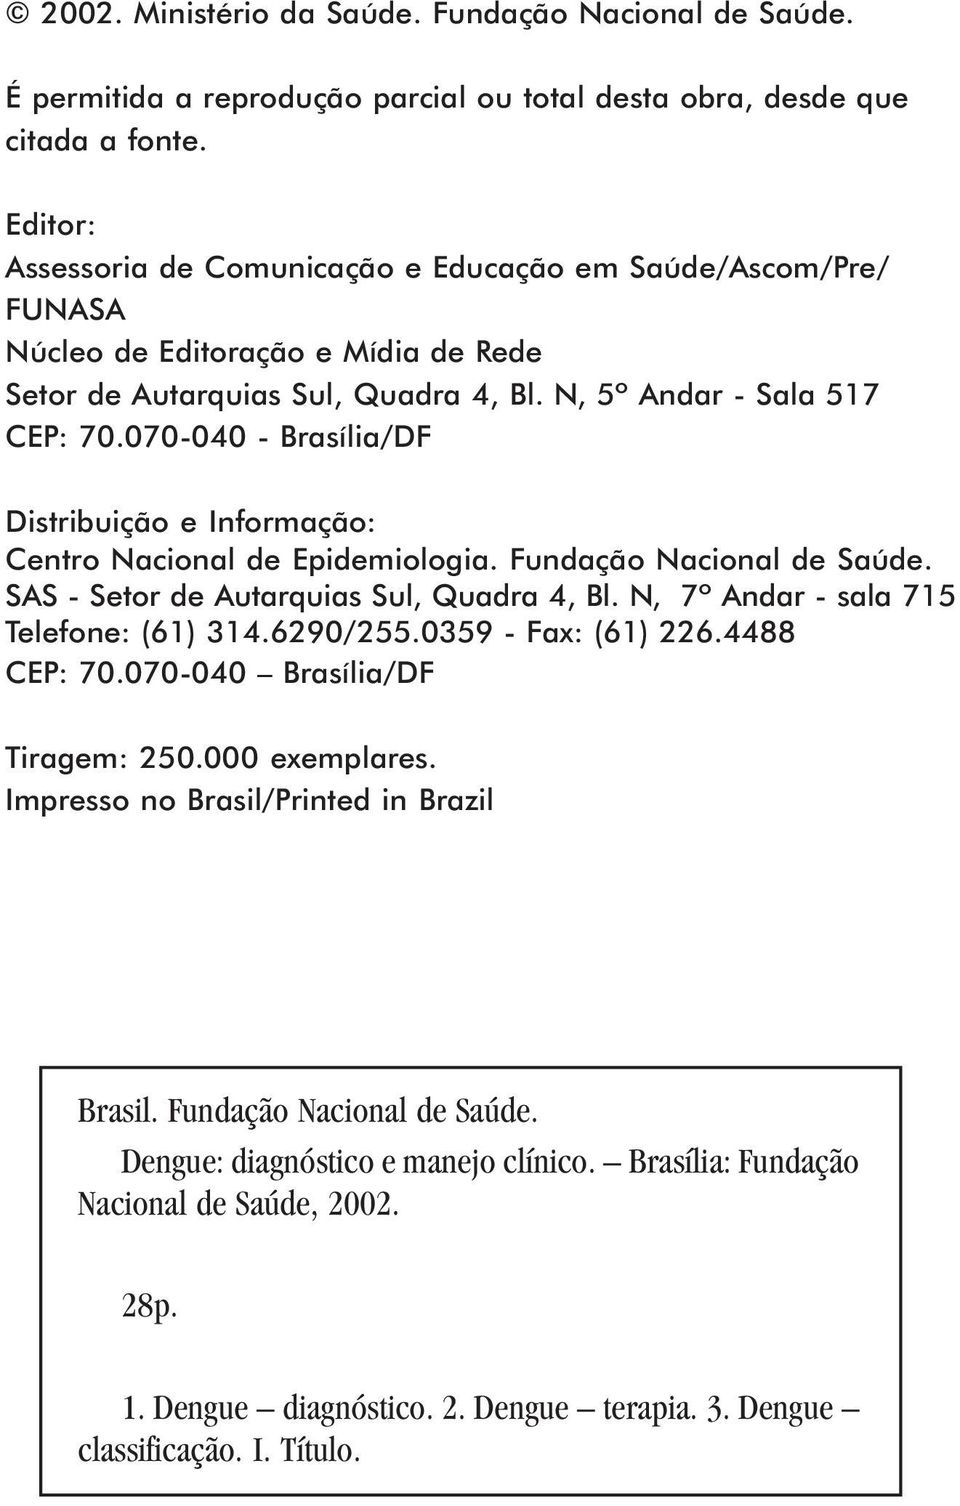 070-040 - Brasília/DF Distribuição e Informação: Centro Nacional de Epidemiologia. Fundação Nacional de Saúde. SAS - Setor de Autarquias Sul, Quadra 4, Bl. N, 7º Andar - sala 715 Telefone: (61) 314.